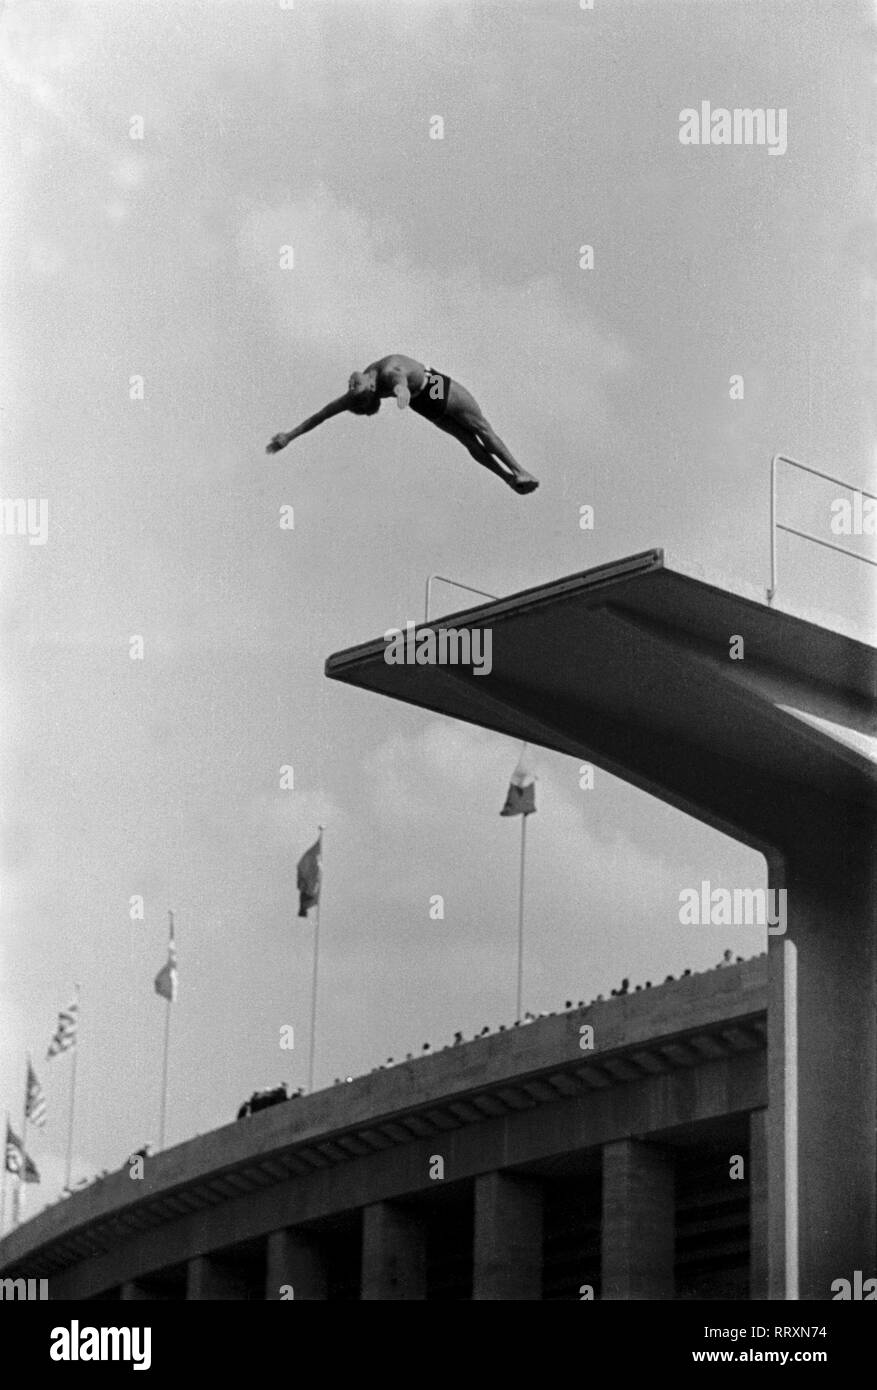 Jeux Olympiques d'été 1936 - L'Allemagne, Troisième Reich - Jeux Olympiques Jeux Olympiques d'été de 1936, à Berlin. Compétition de natation hommes au stade de natation - plate-forme diver - voir du saut. L'image date d'août 1936. Photo Erich Andres Banque D'Images